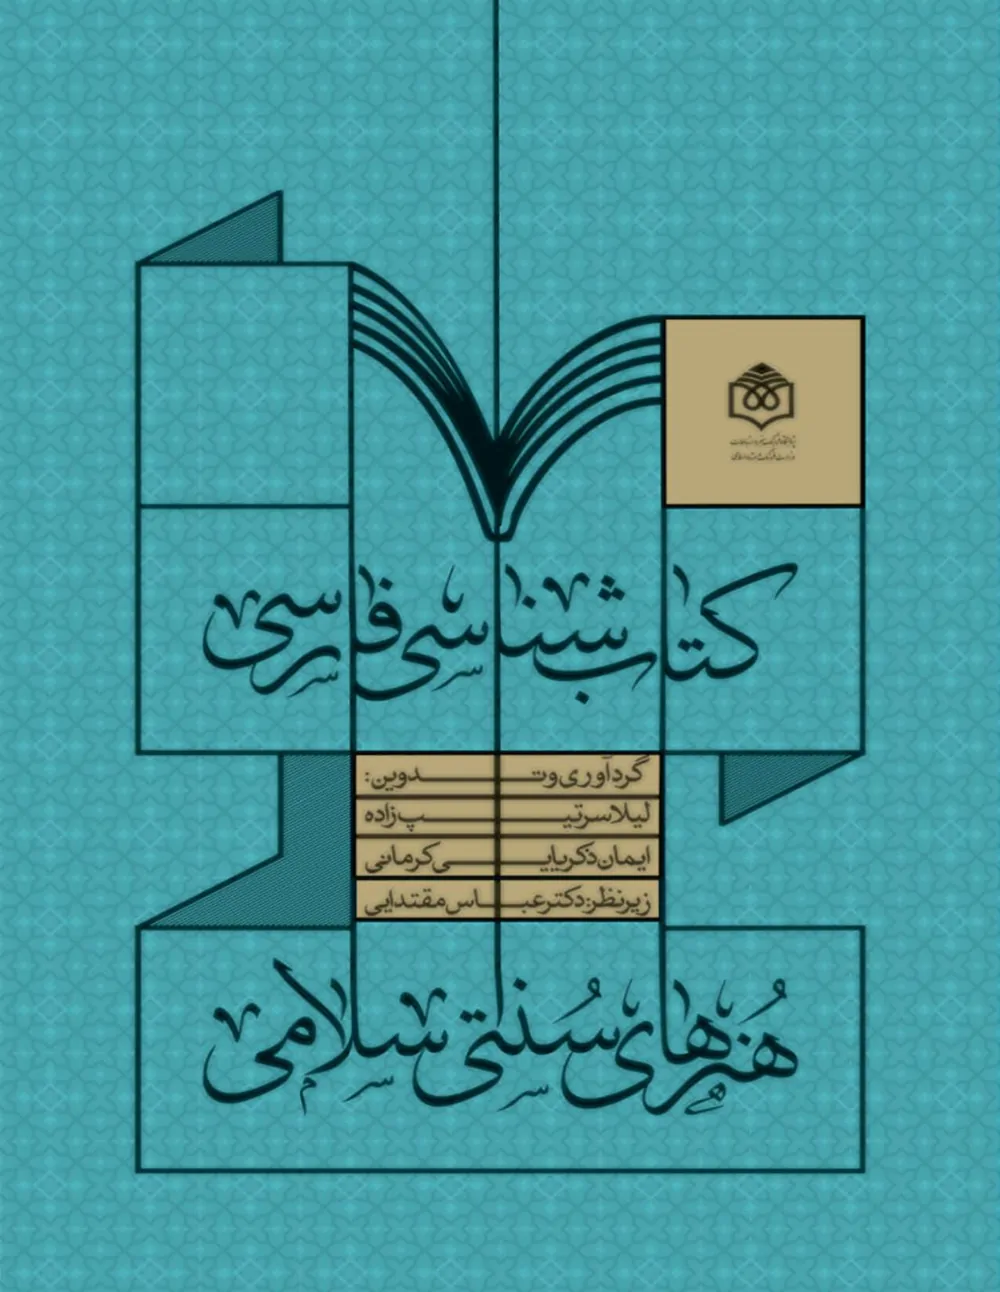 کتابشناسی فارسی هنرهای سنتی - اسلامی